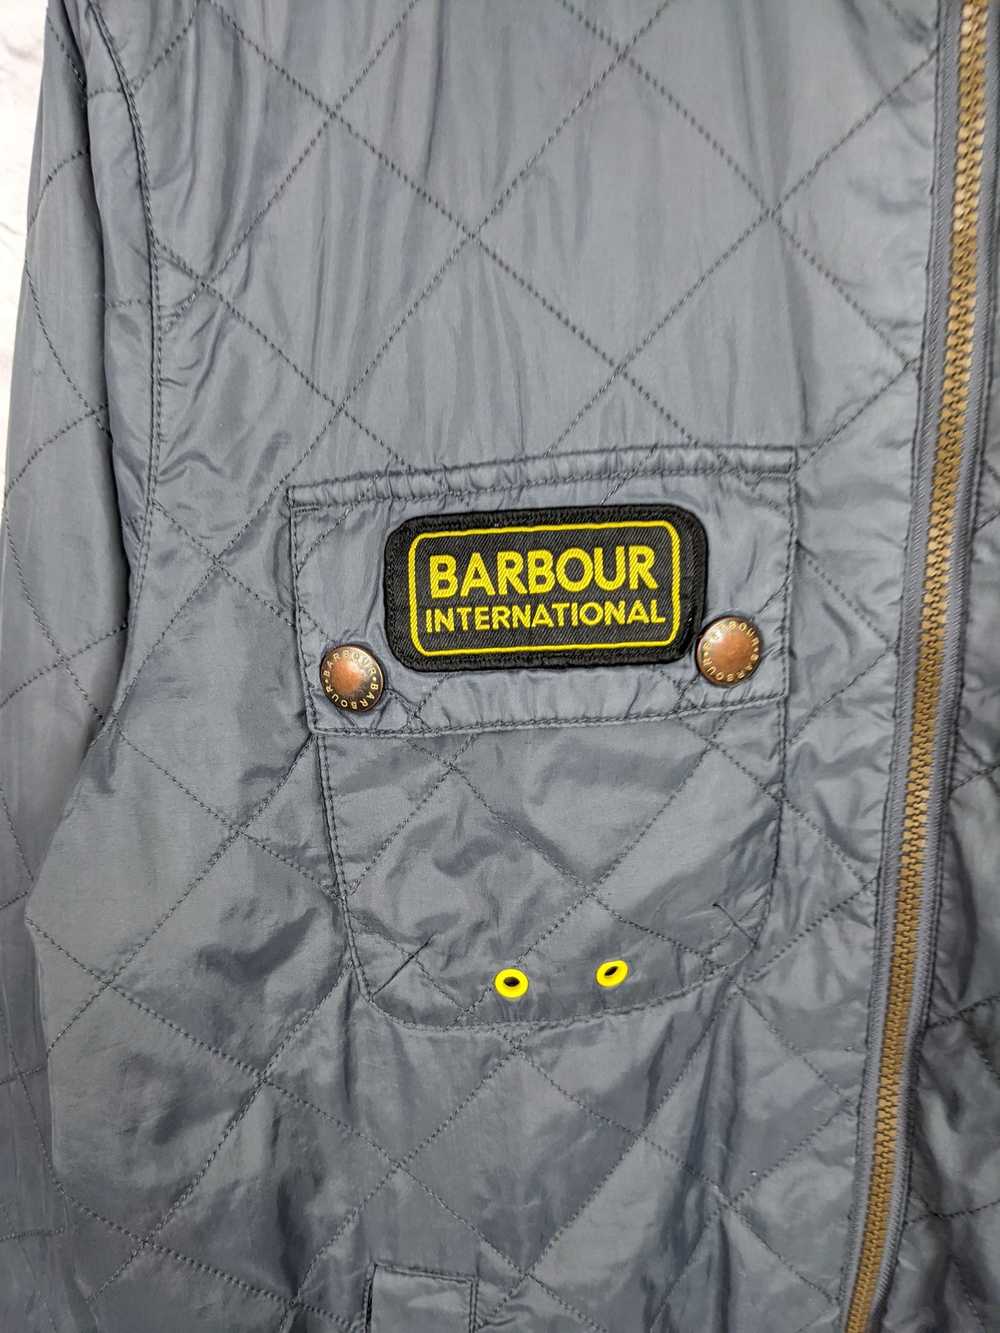 Barbour Barbour light jacket grey international w… - image 11